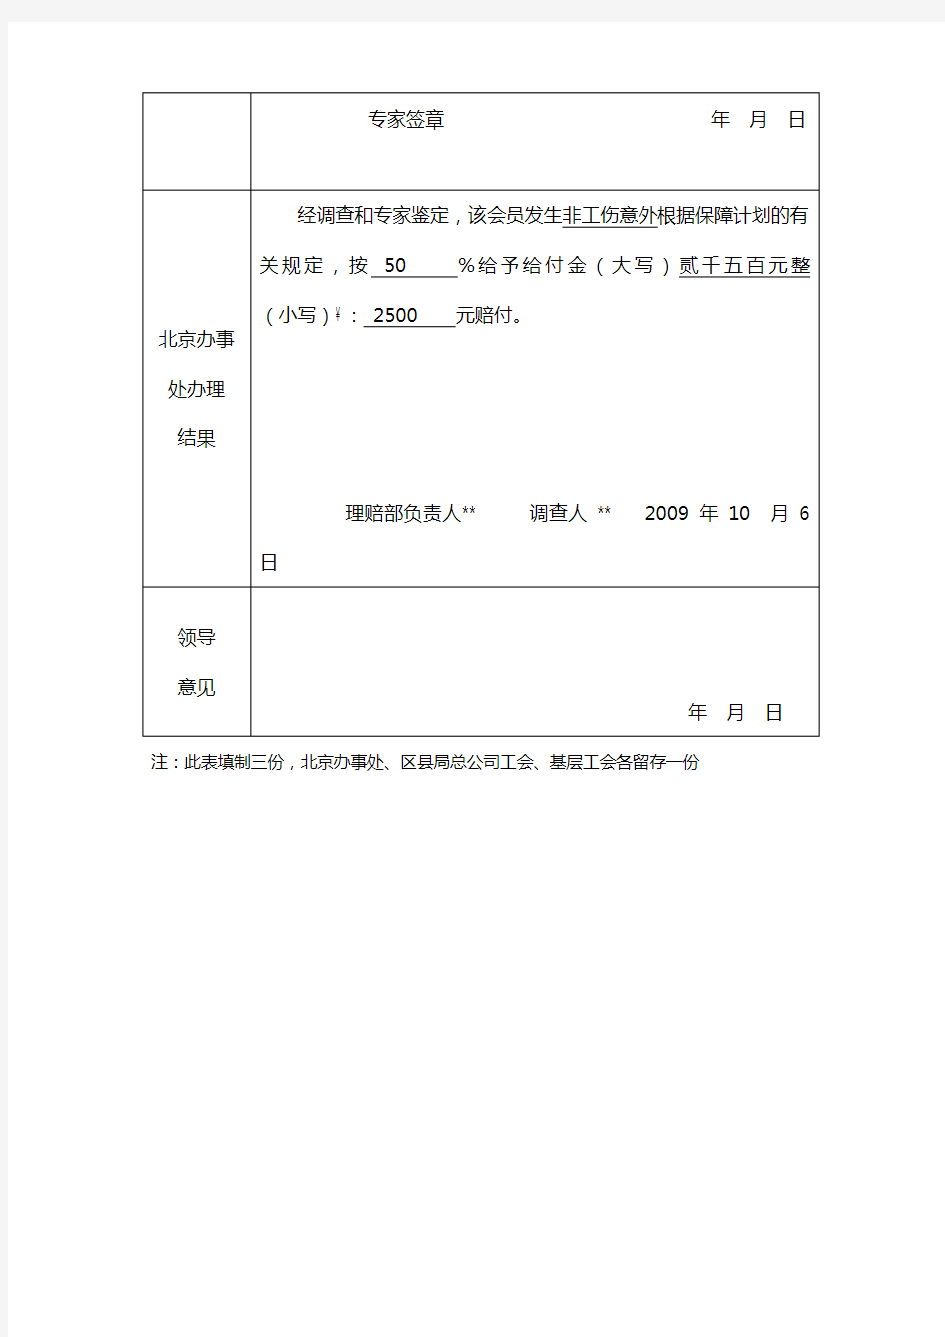 北京市工会会员服务卡互助保障方案